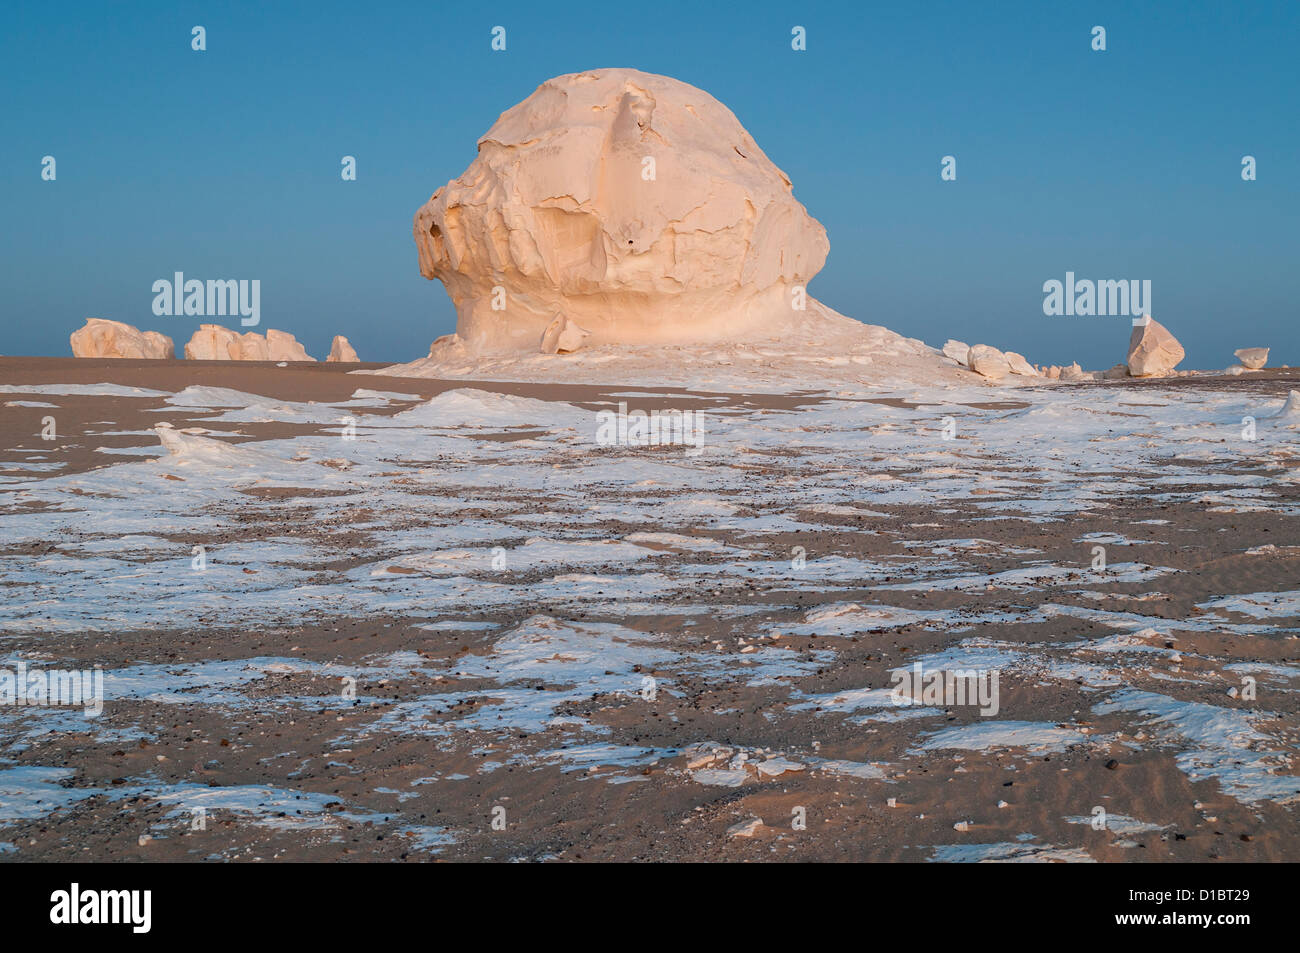 Roches calcaires, le désert blanc (Sahara el Beyda), Égypte Banque D'Images